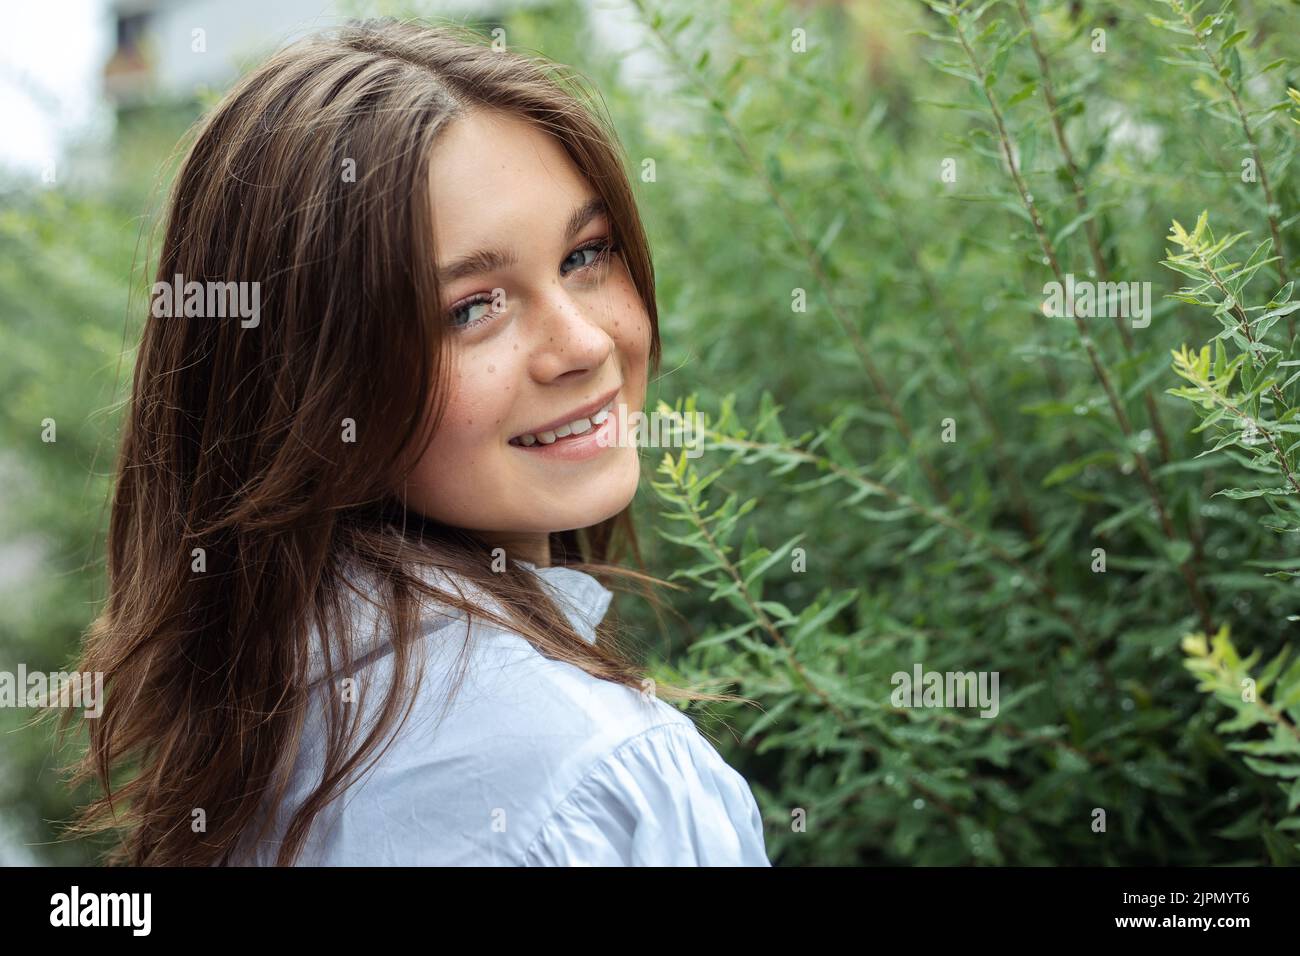 Primo piano ritratto bella ragazza giovane sorridente con gli occhi grigi e lenticelle guardare indietro alla macchina fotografica vicino all'albero verde. Spazio di copia Foto Stock